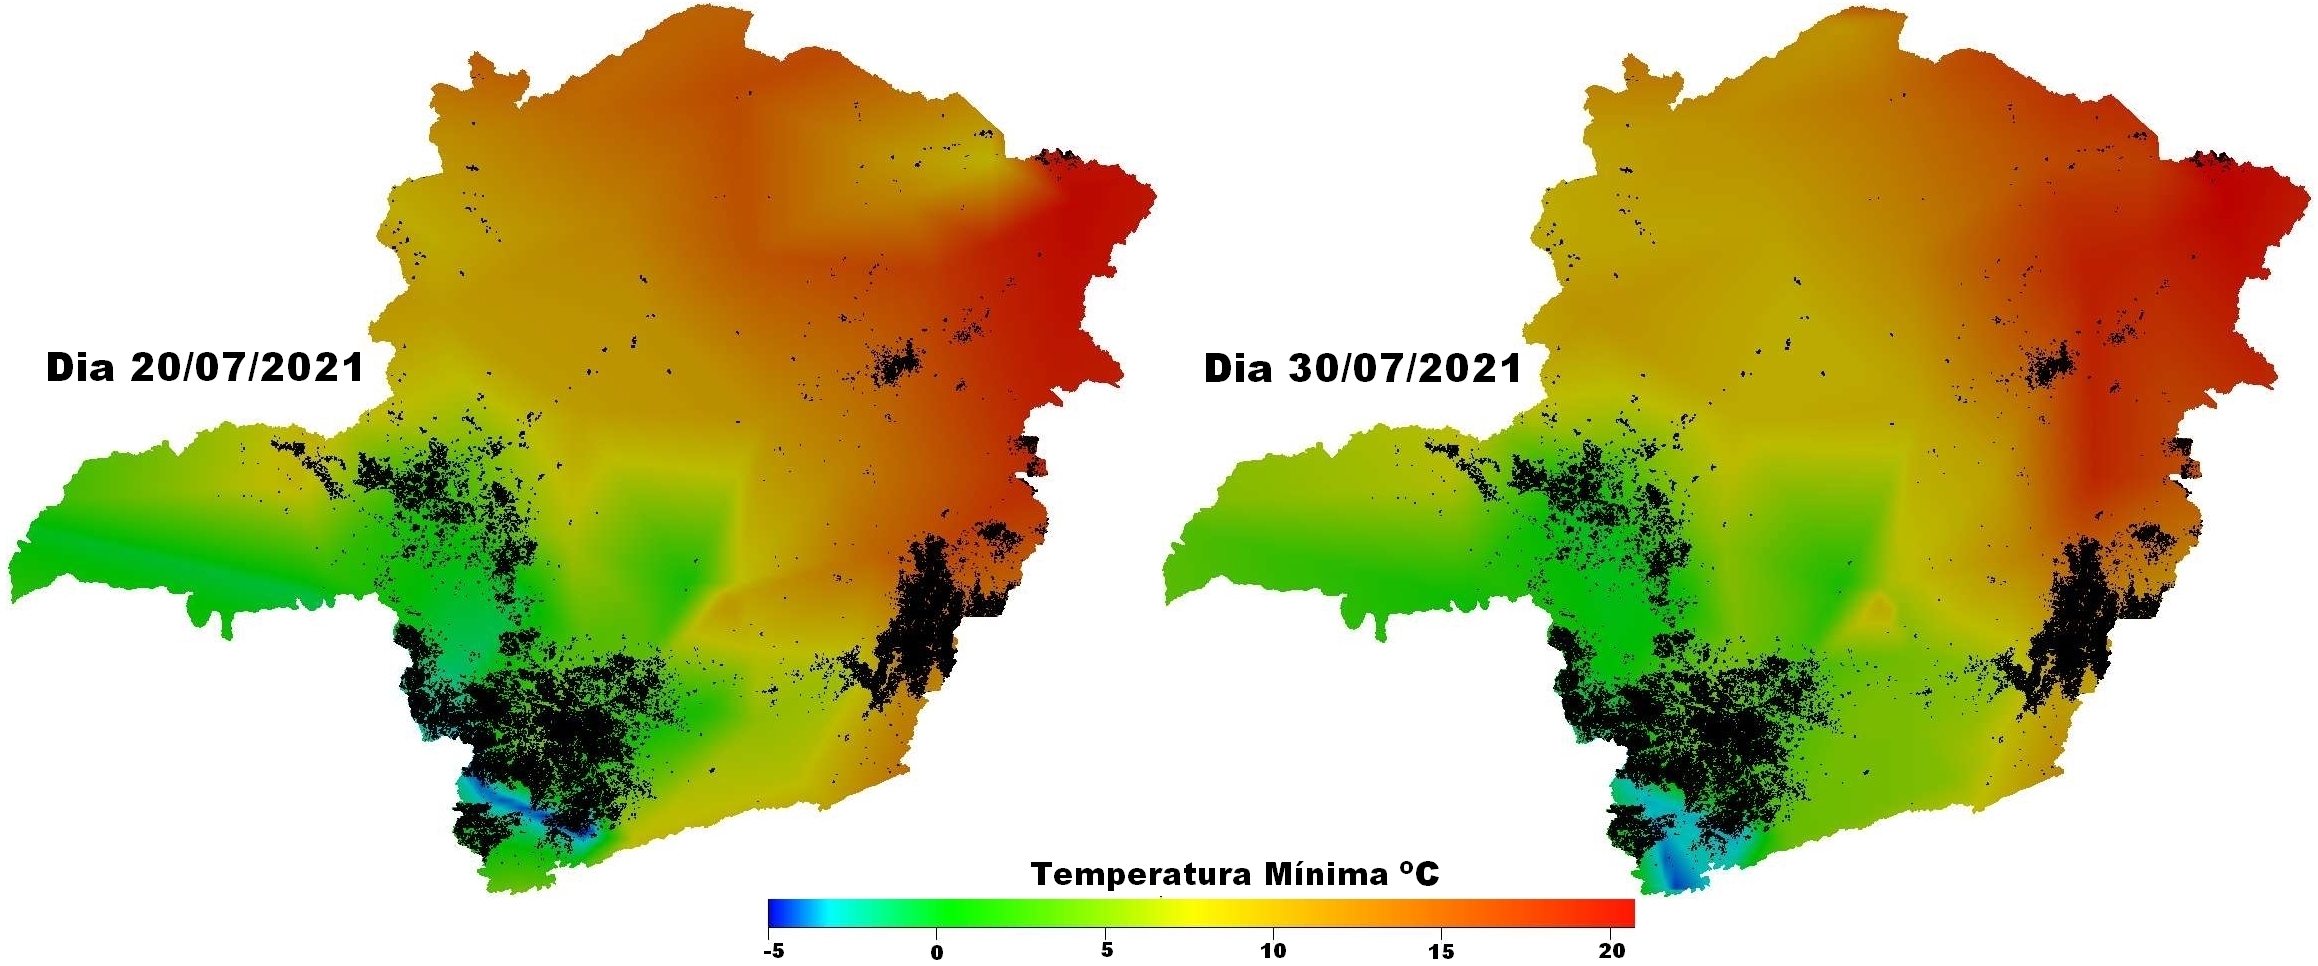 Figura 1. Temperaturas mínimas registradas nos dias 20 e 30 de julho de 2021 e áreas de cultivo de café em Minas Gerais. Fonte de dados: Geoportal do Café - Emater-MG e estações automáticas do INMET.